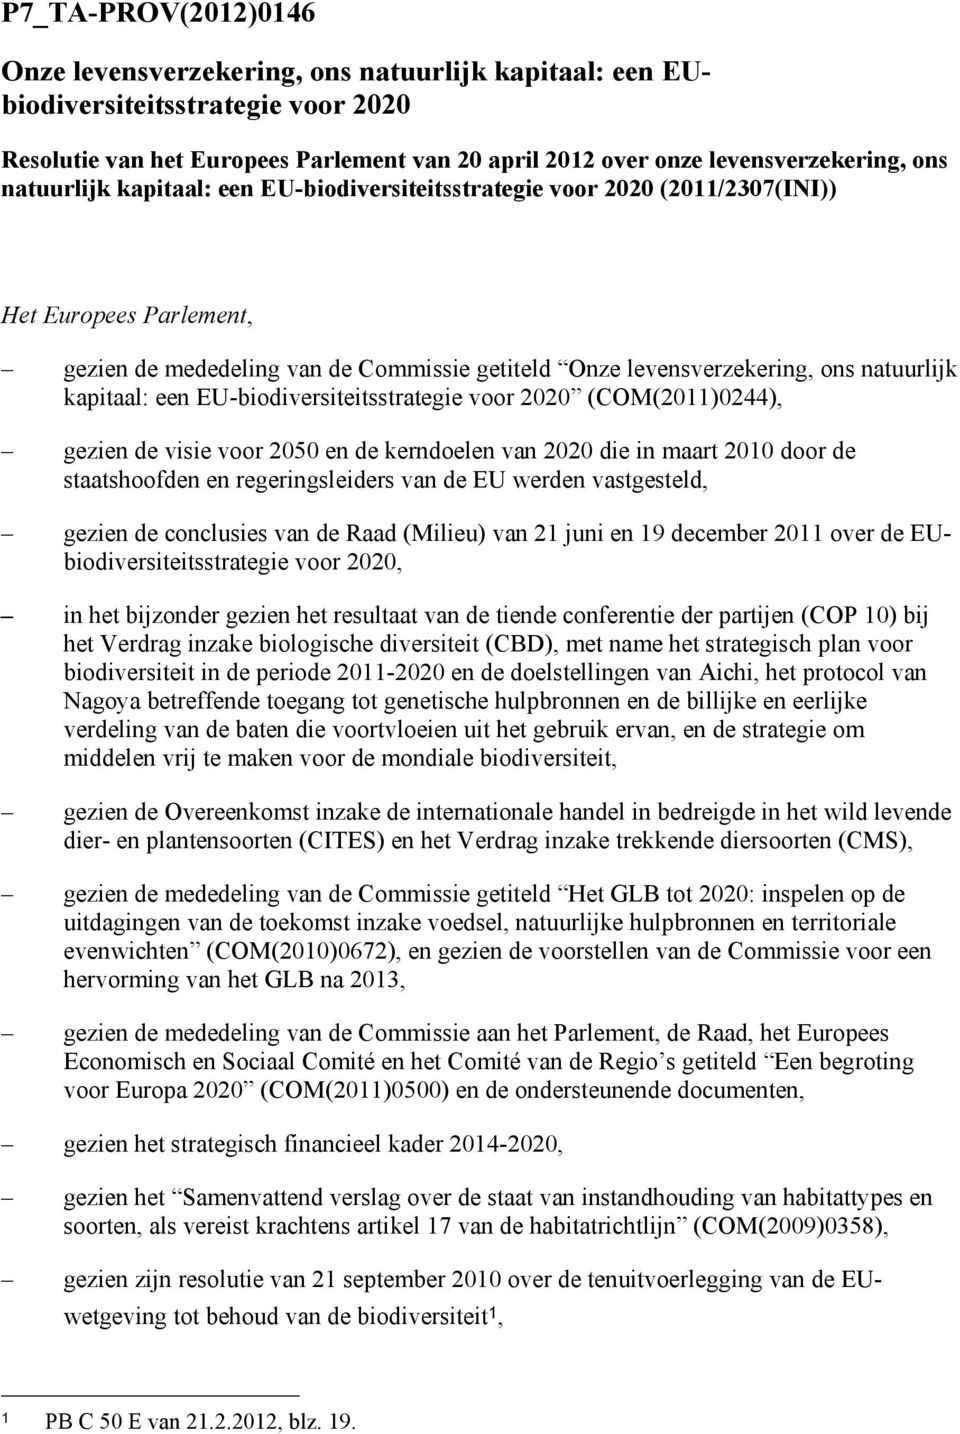 een EU-biodiversiteitsstrategie voor 2020 (COM(2011)0244), gezien de visie voor 2050 en de kerndoelen van 2020 die in maart 2010 door de staatshoofden en regeringsleiders van de EU werden